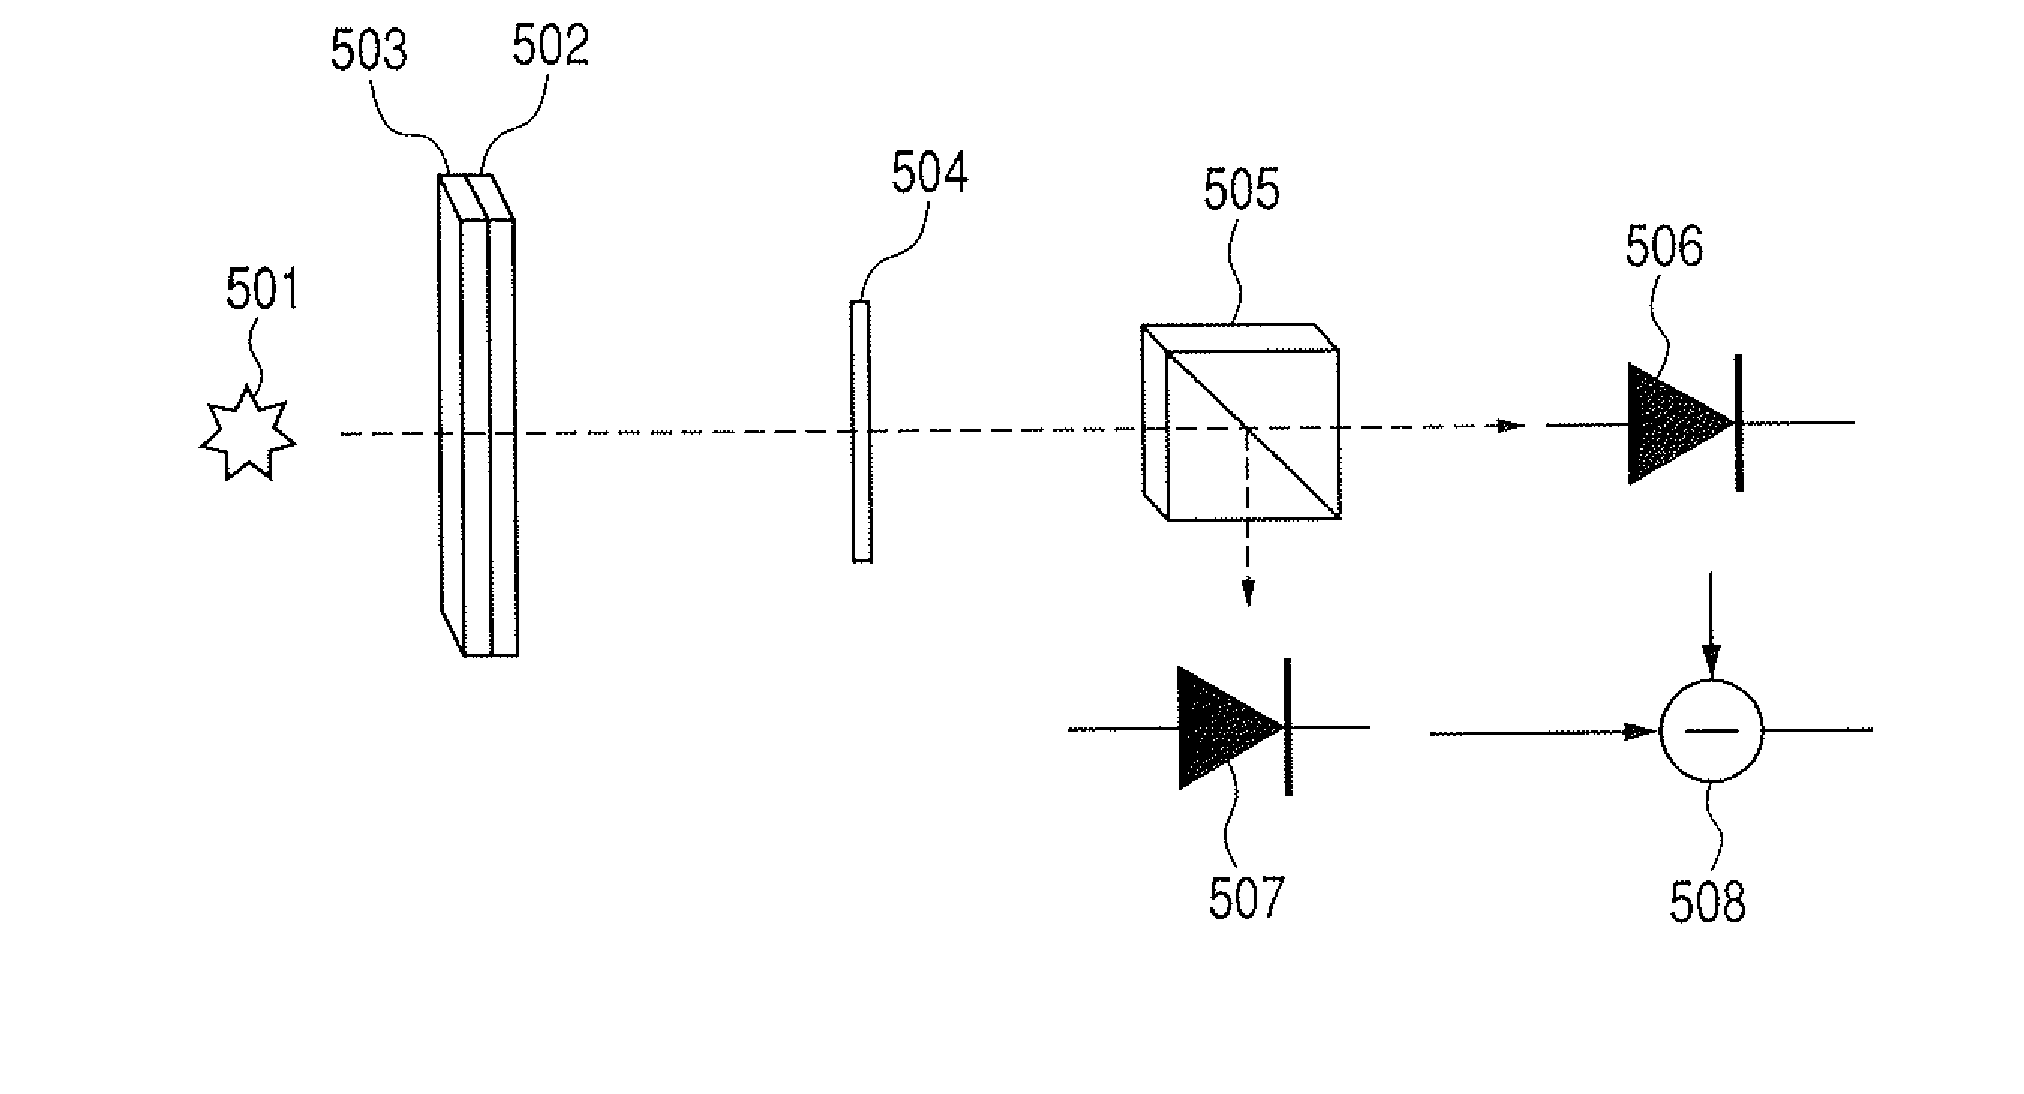 Method for designing light transmission device, optical element and sensor